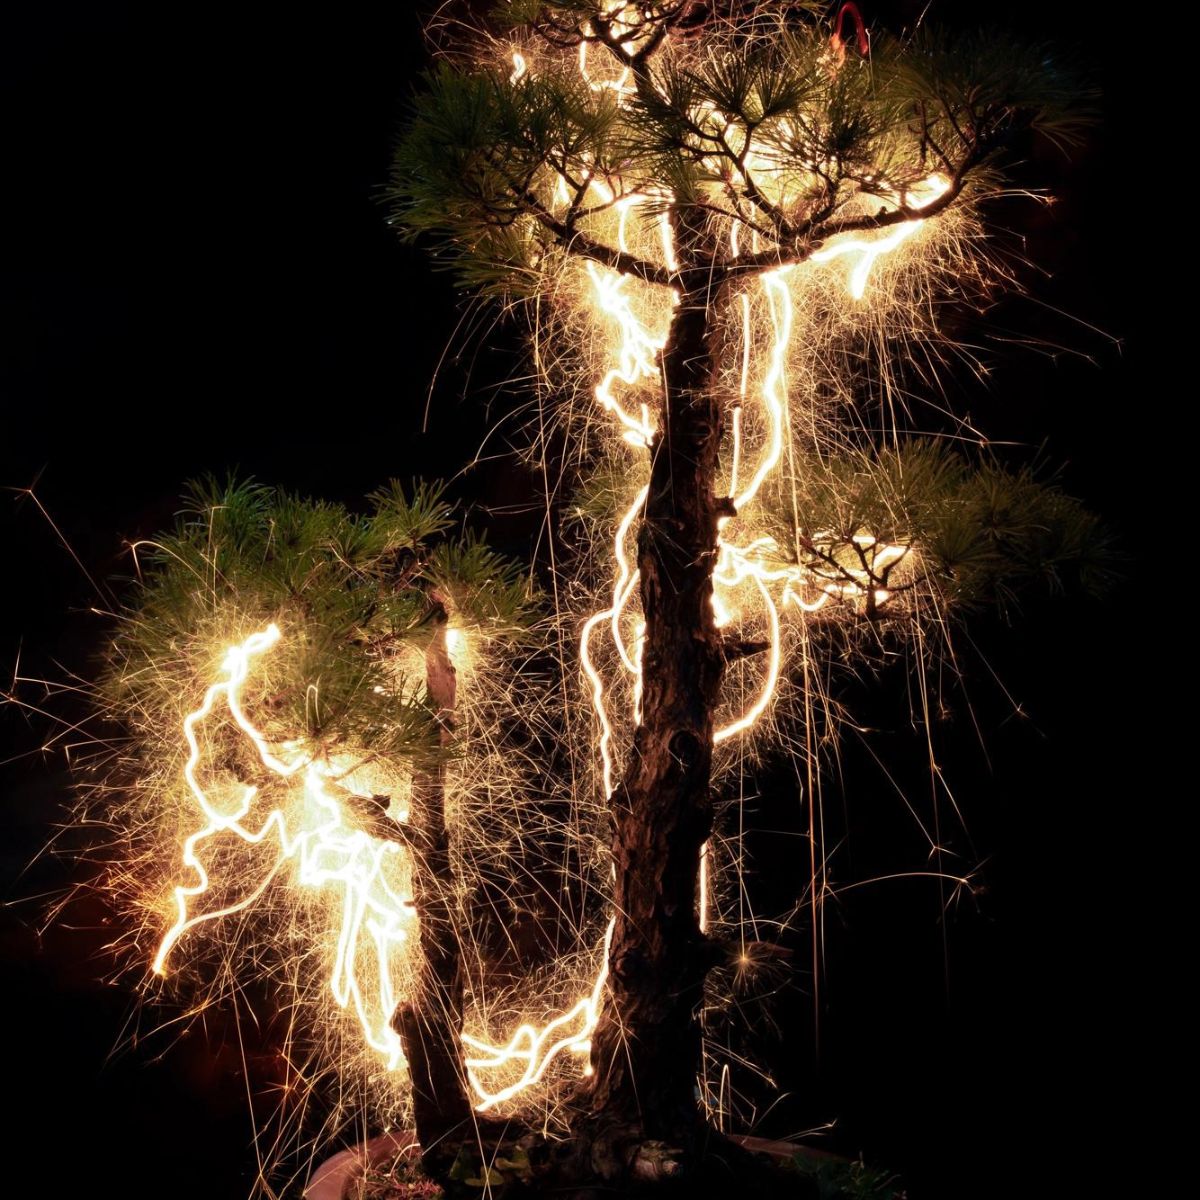 Vitor Schietti photographs featuring illuminated bonsai trees featured on Thursd